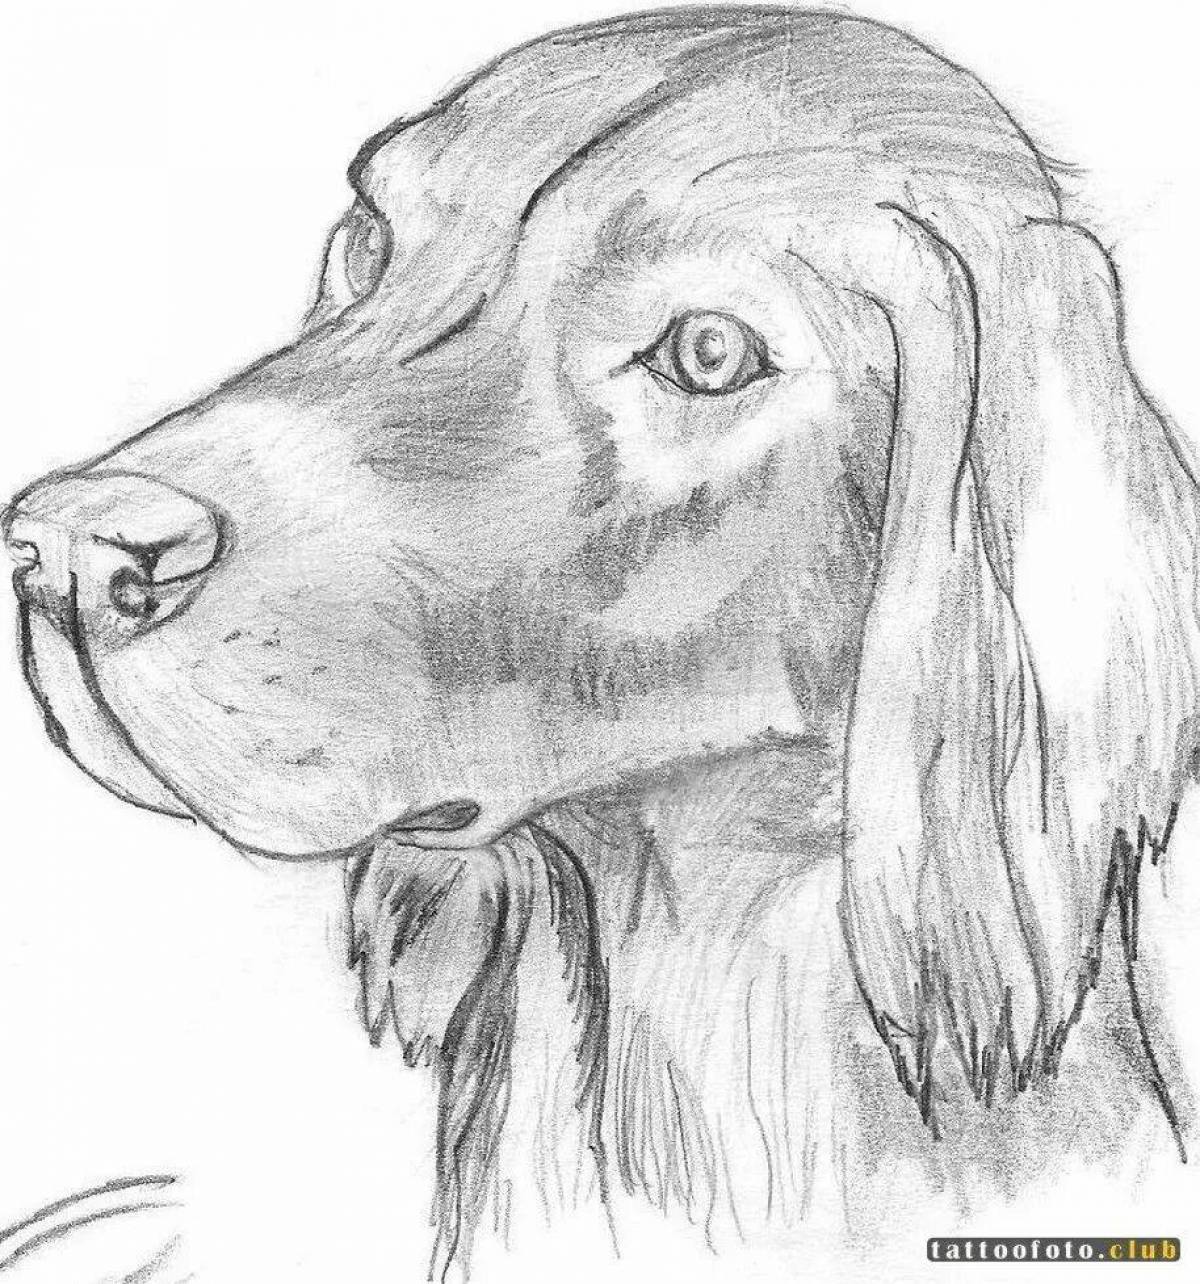 Картинки чтоб срисовывать. Рисунок собаки карандашом для срисовки. Собака рисунок карандашом. Красивые рисунки собак карандашом. Картинки собак для срисовки.